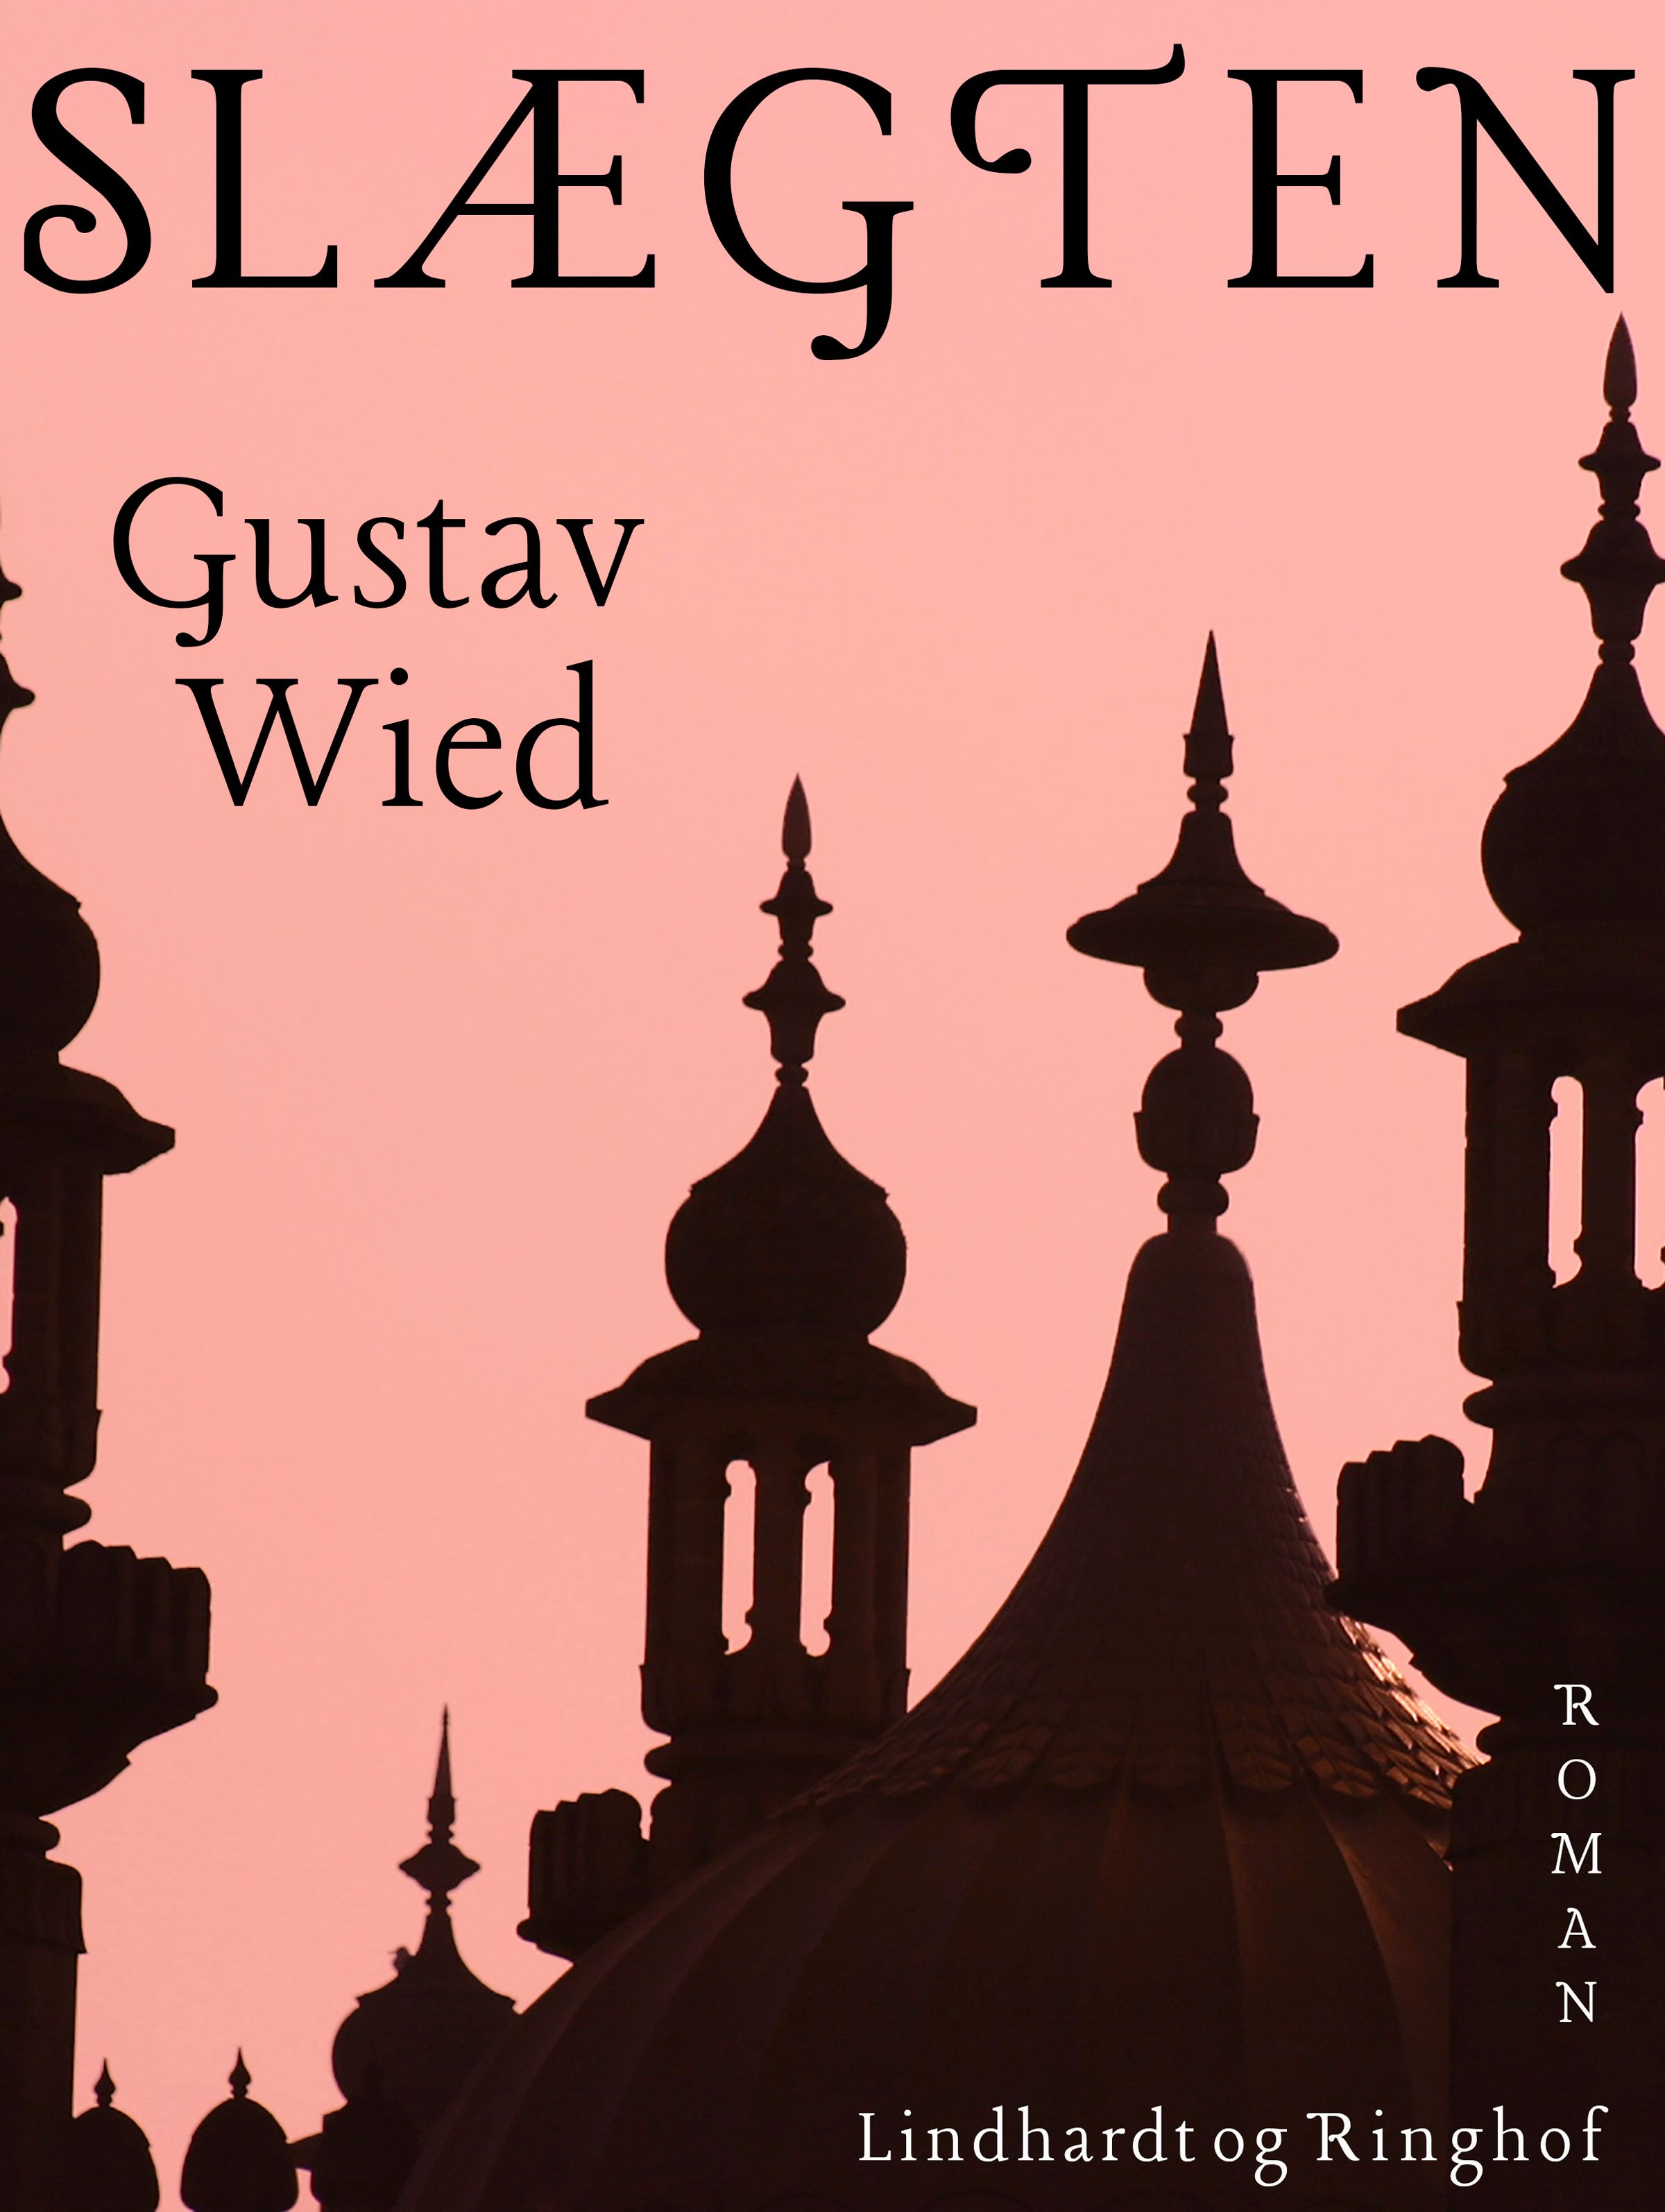 Slægten, e-bok av Gustav Wied